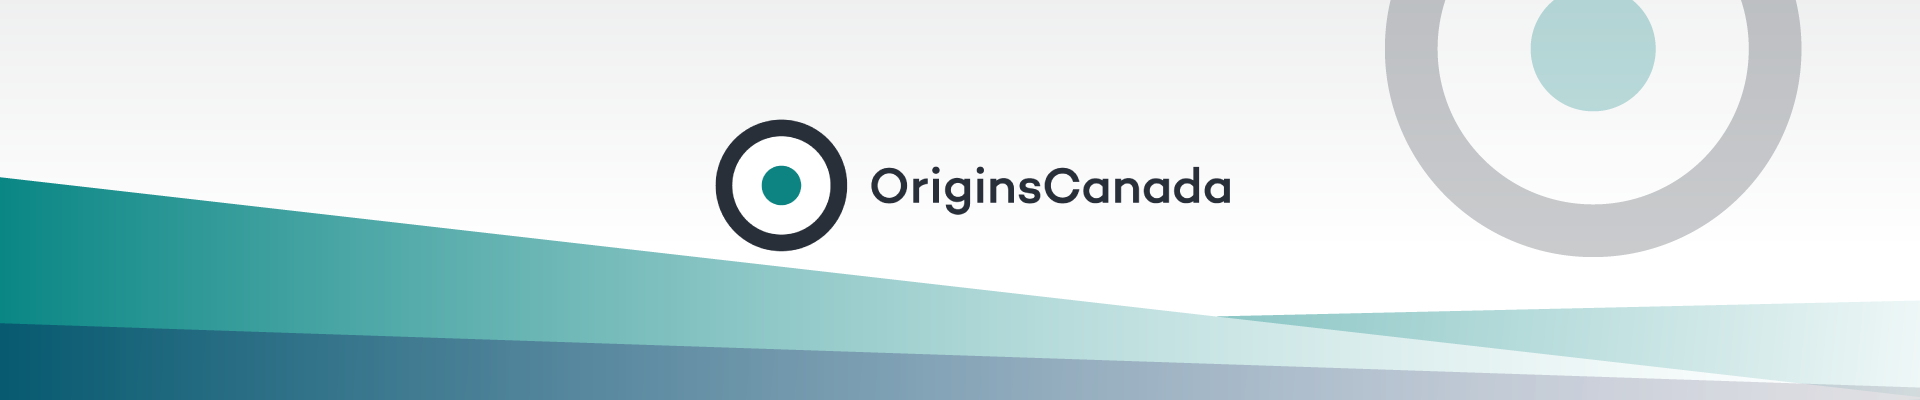 Origins Software Header Image